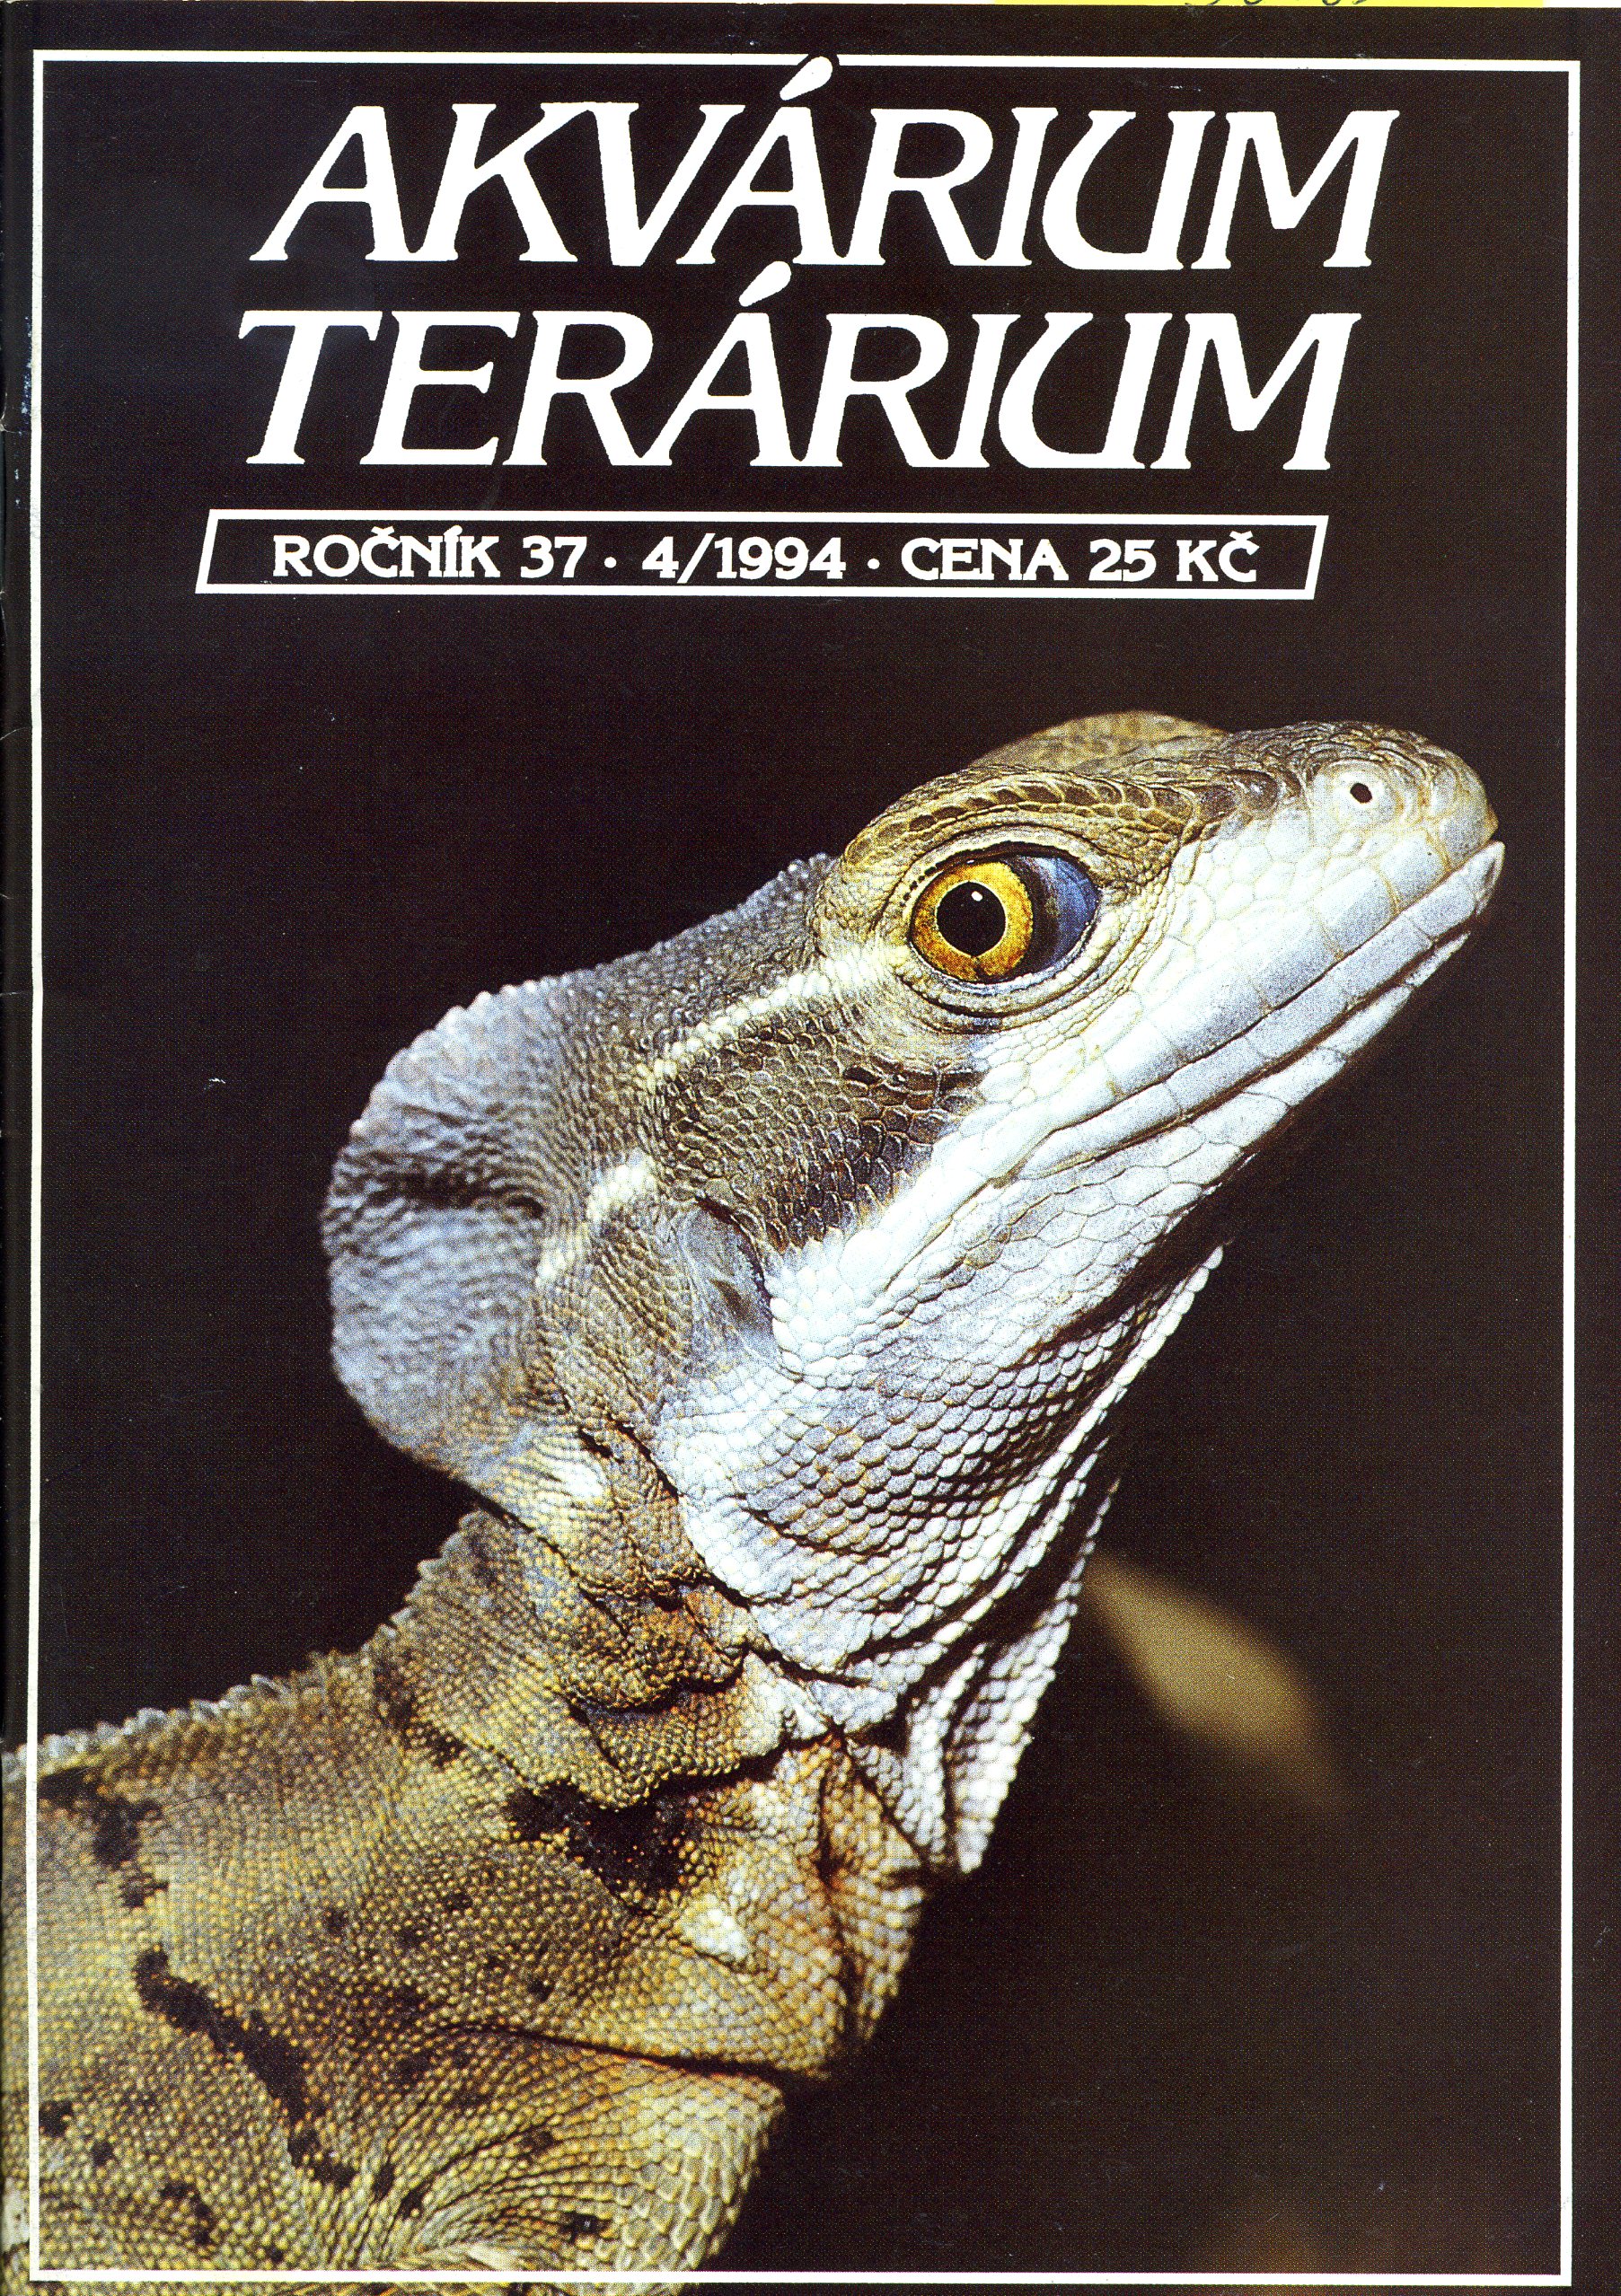 Kvárium terárium 4/1994